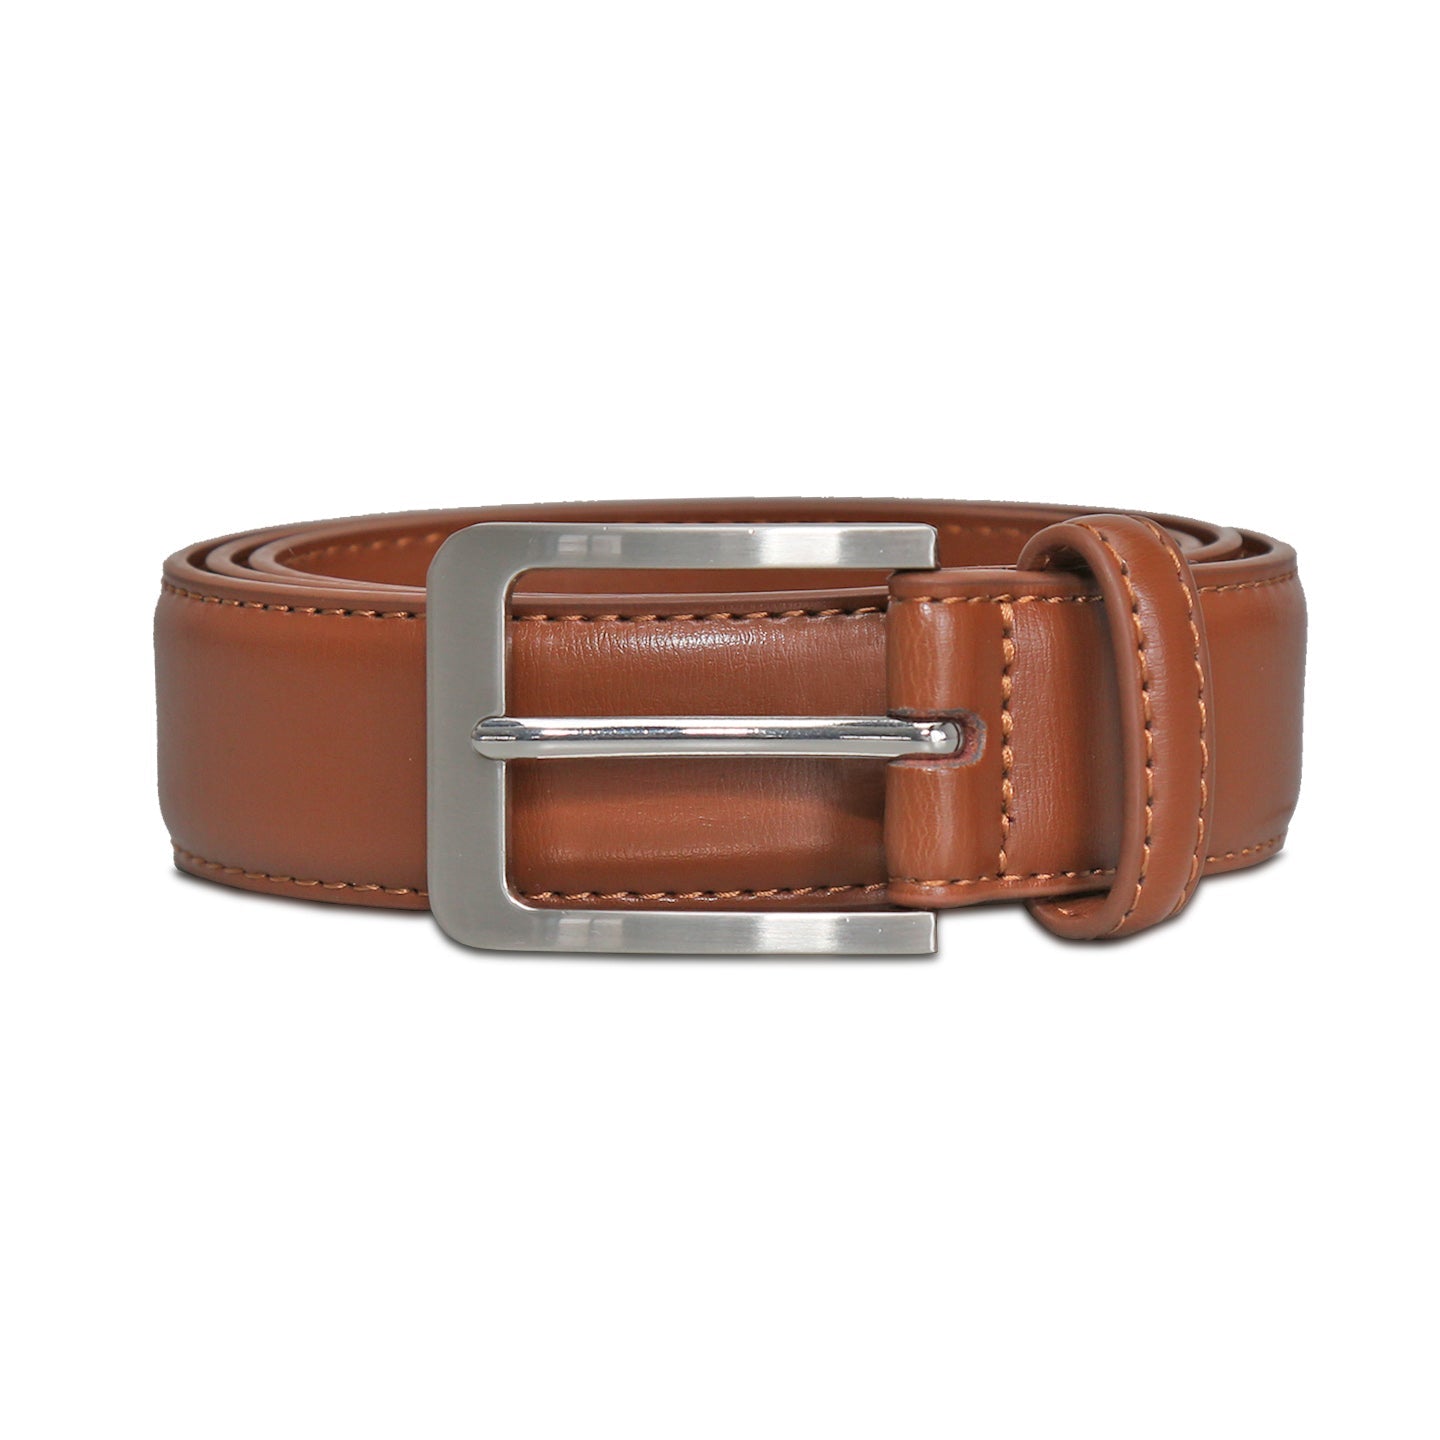 Solid Leather Belt - Light Brown